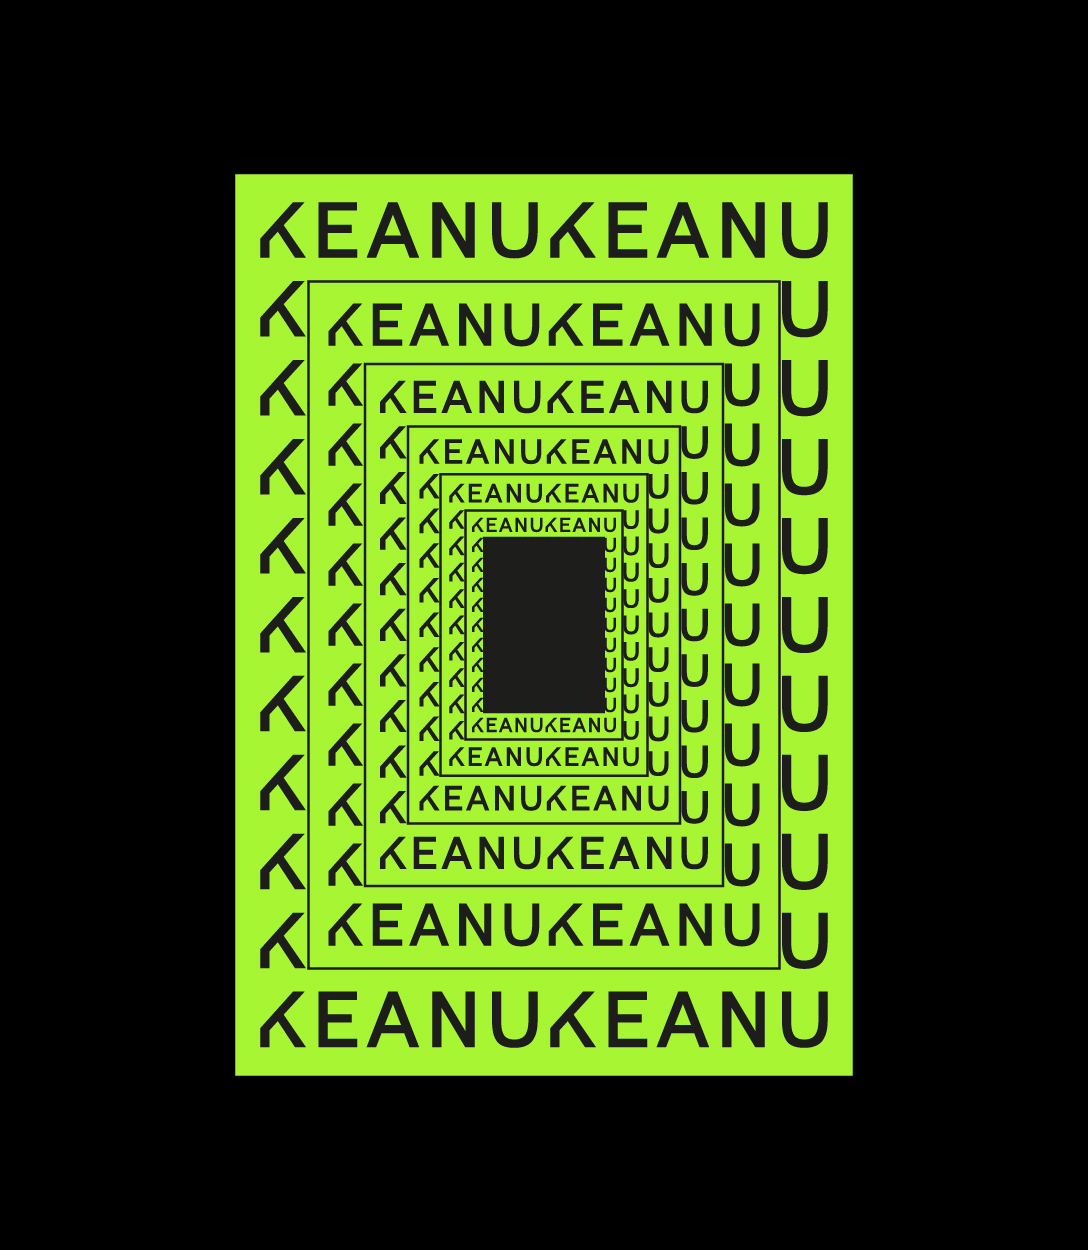 Variación de marca de Keanu como marco verde repetido hacia el fondo